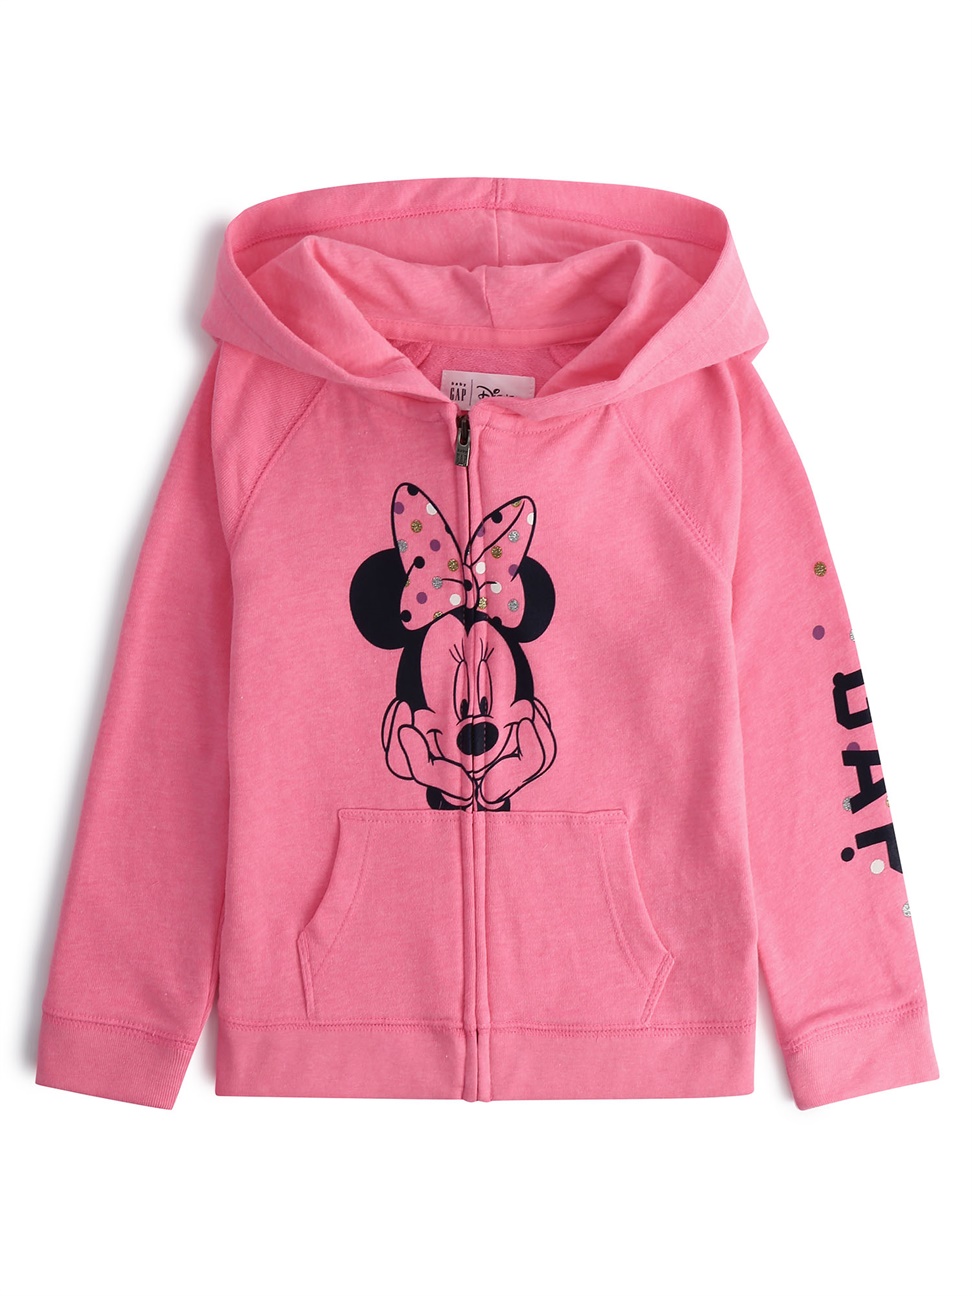 女幼童裝|Gap x Disney迪士尼聯名 米妮印花帽T-米妮老鼠圖案